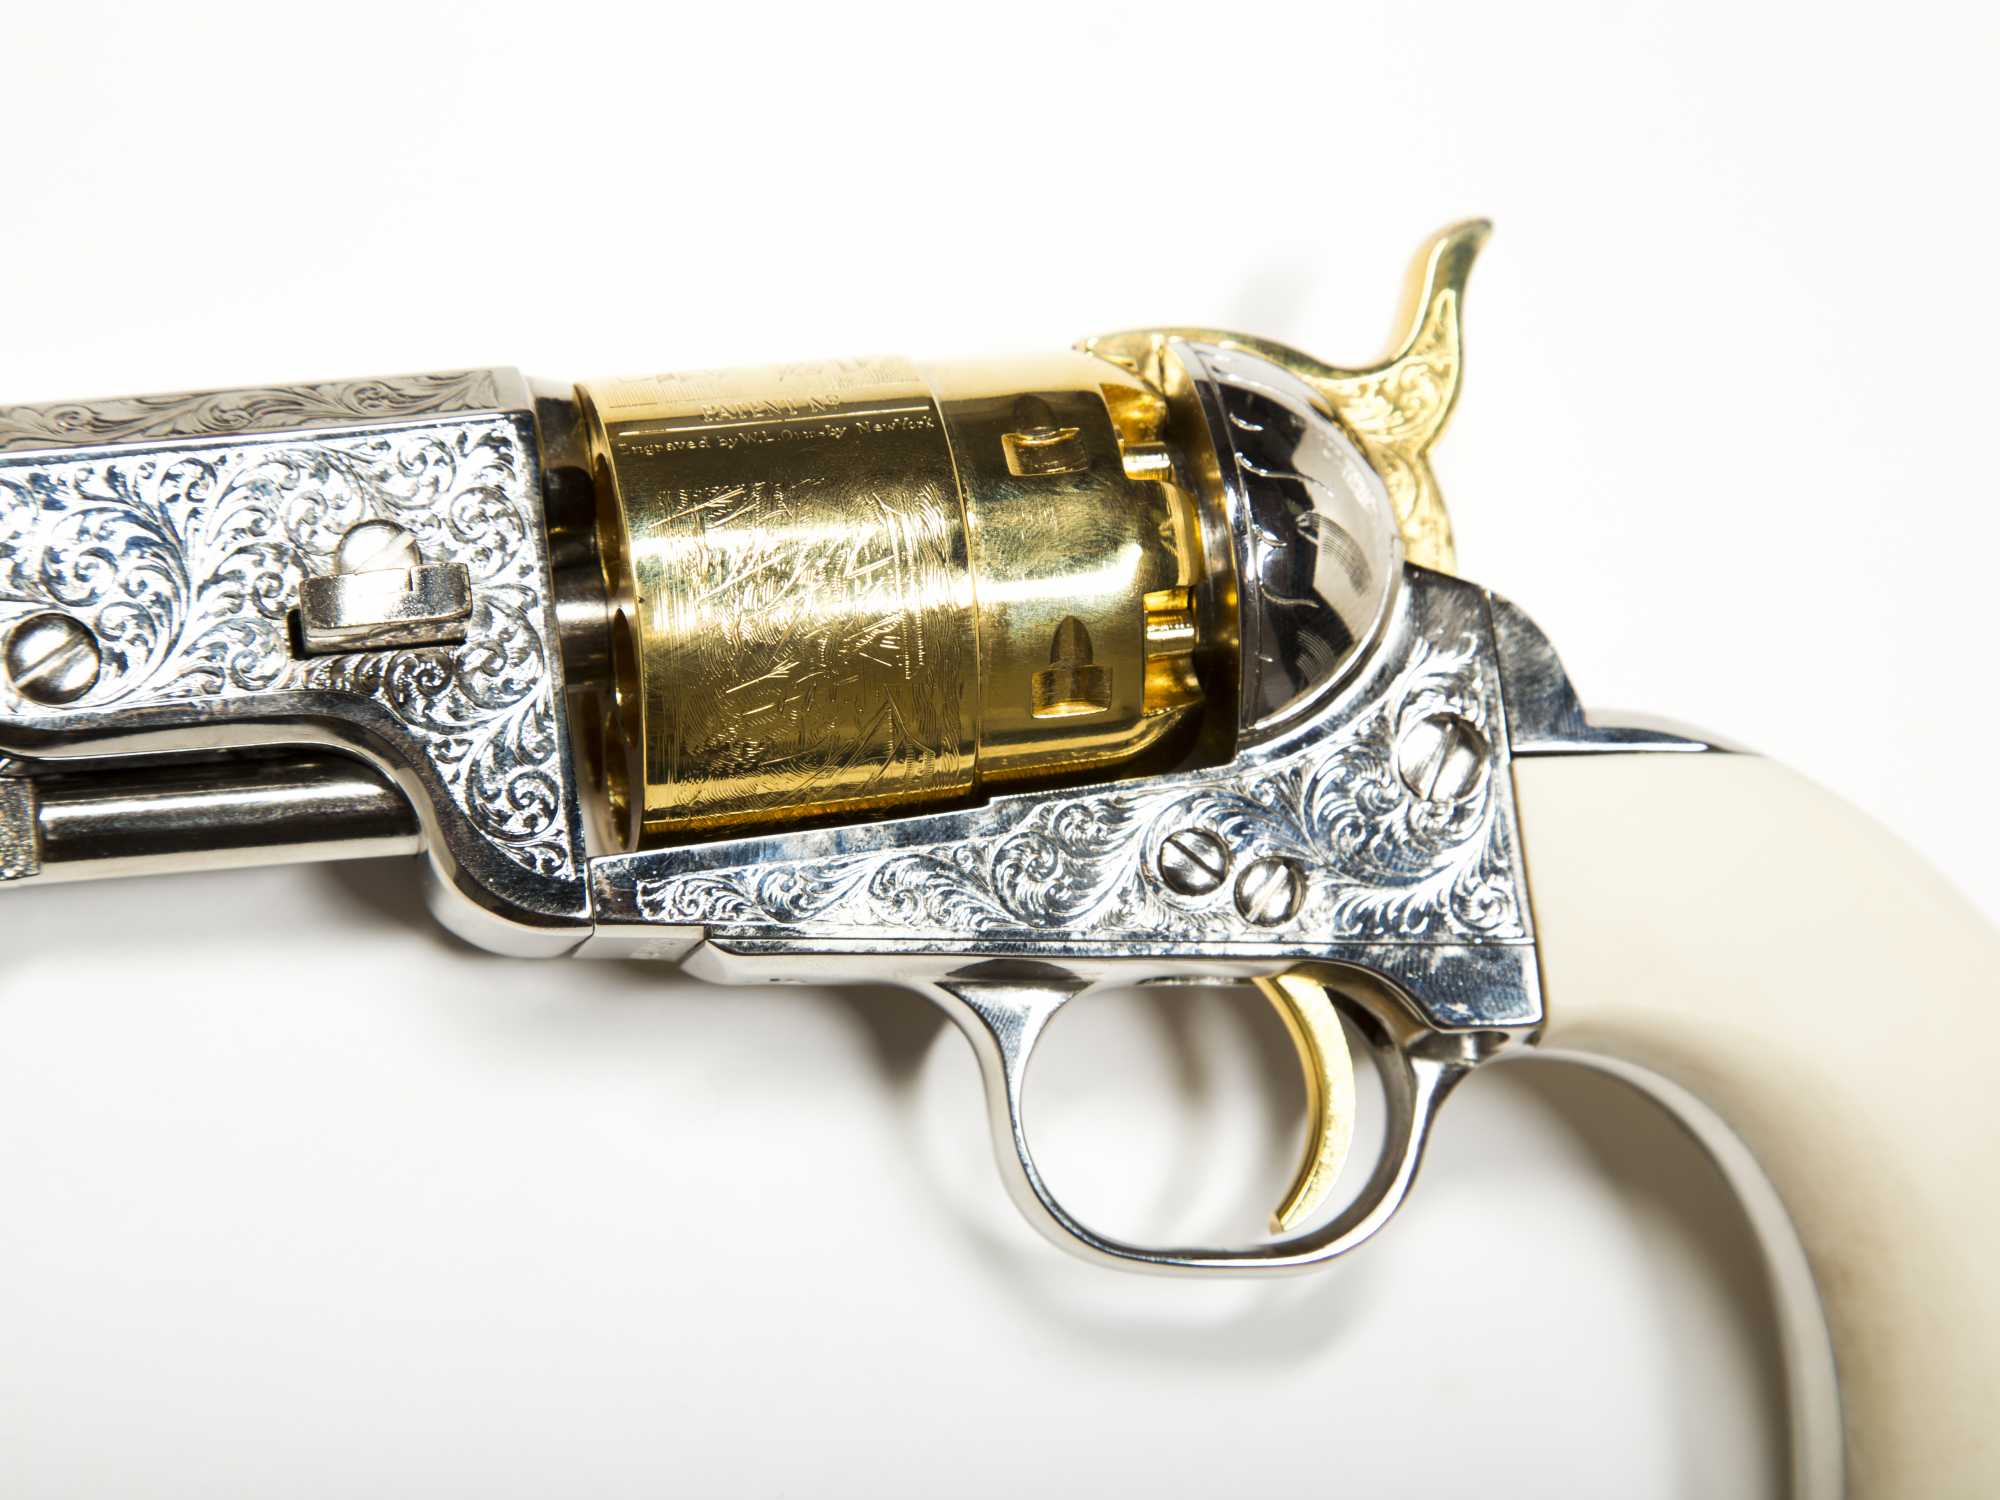 F.LLI Pietta Black Powder Revolver, 44 cal, s/544896,7 3/8